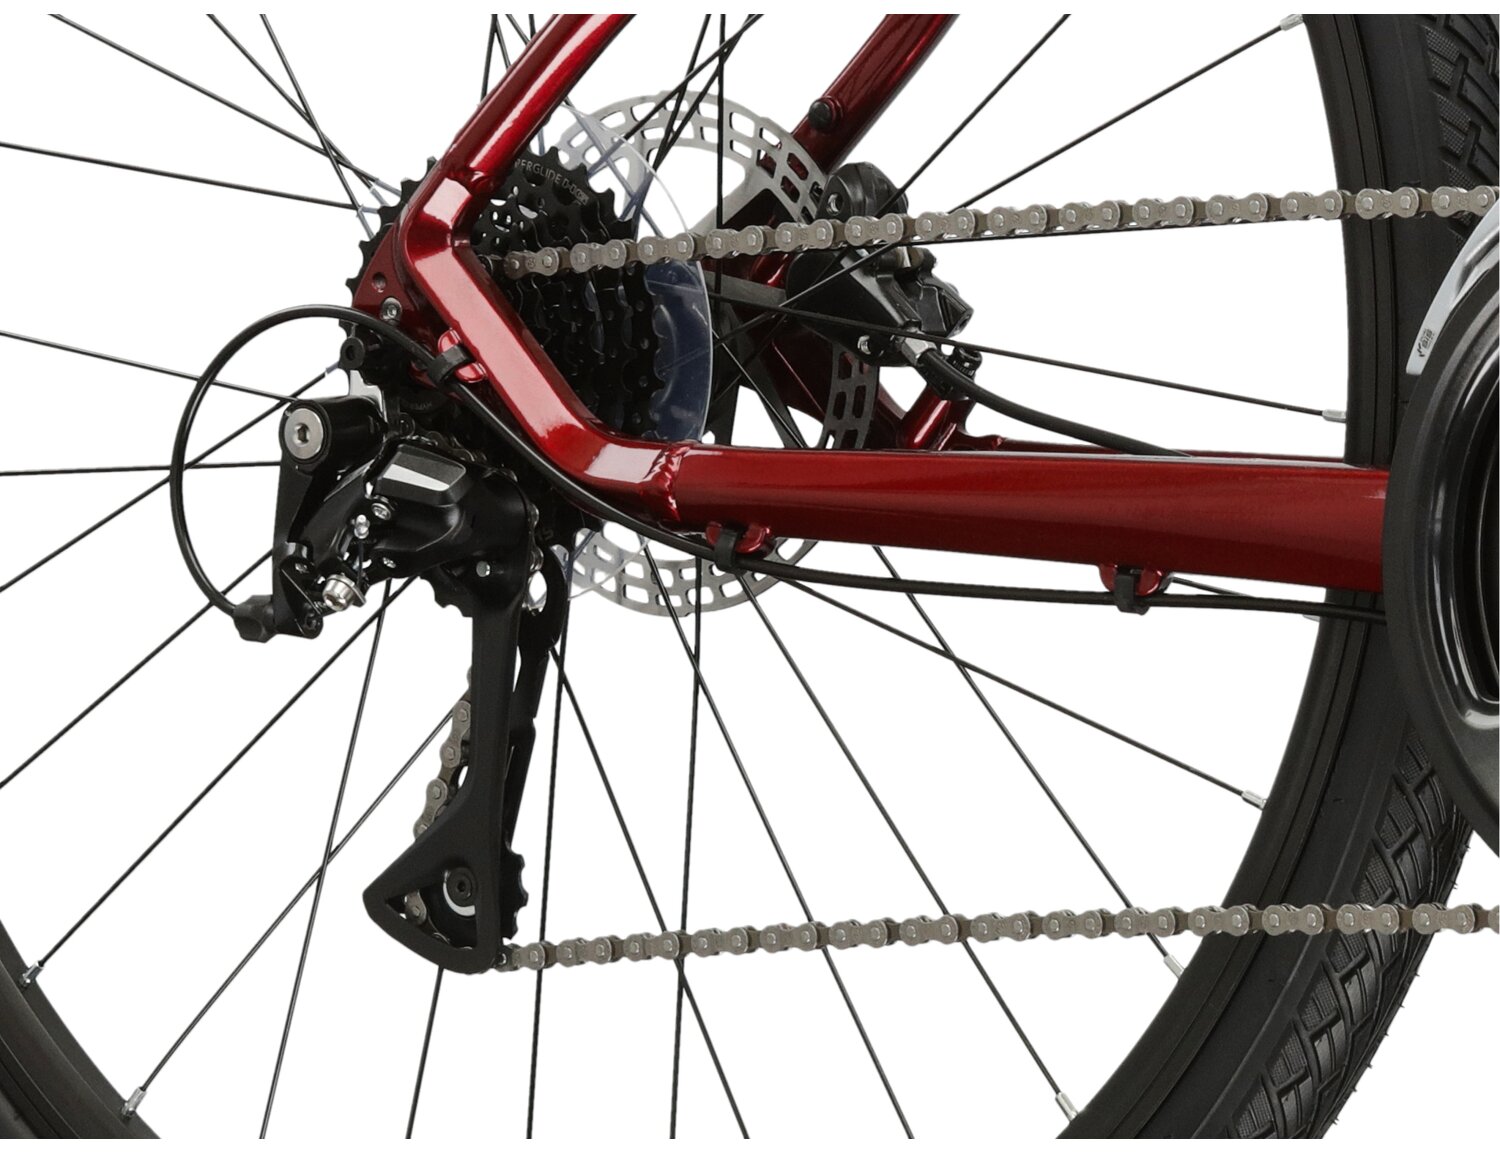  Tylna ośmiorzędowa przerzutka Shimano Acera RD M3020 oraz hydrauliczne hamulce tarczowe Shimano MT200 w rowerze crossowym damskim Kross Evado 4.0 